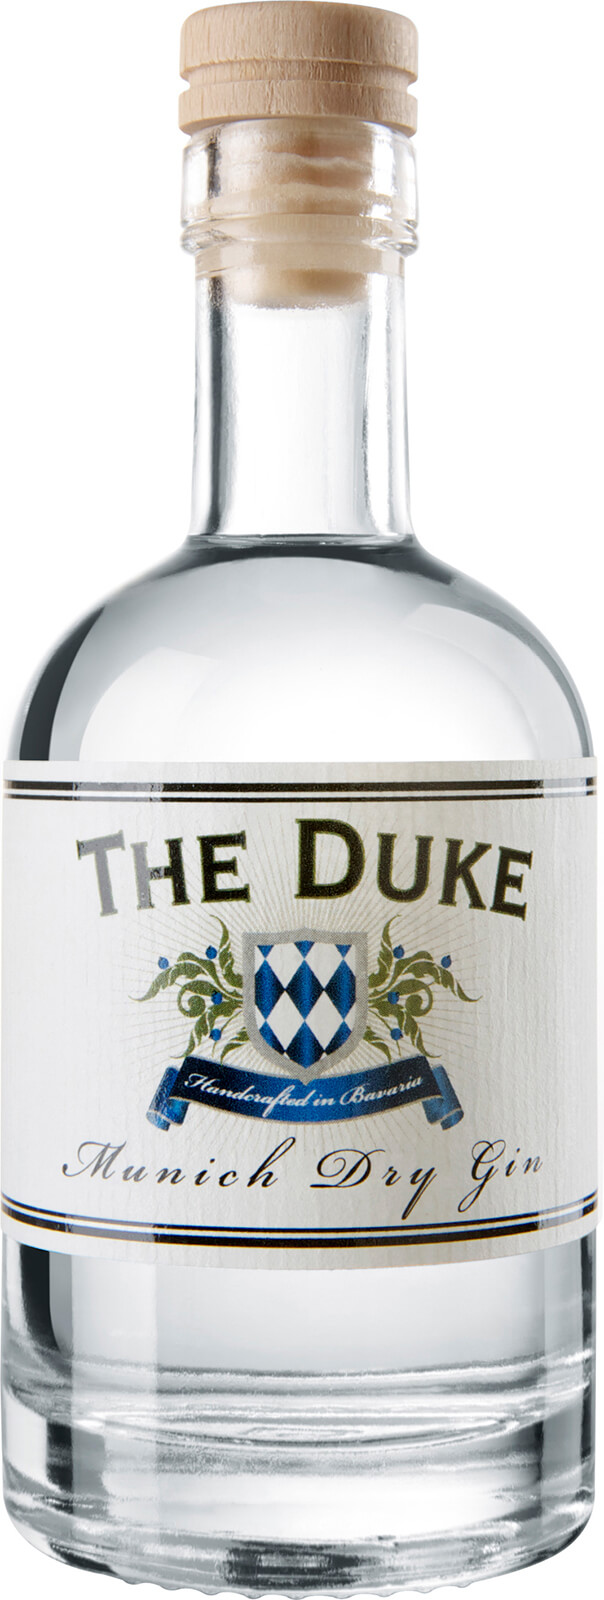 The Duke Destillerie The Duke BIO Gin 0,1 45% Liter Munich Dry